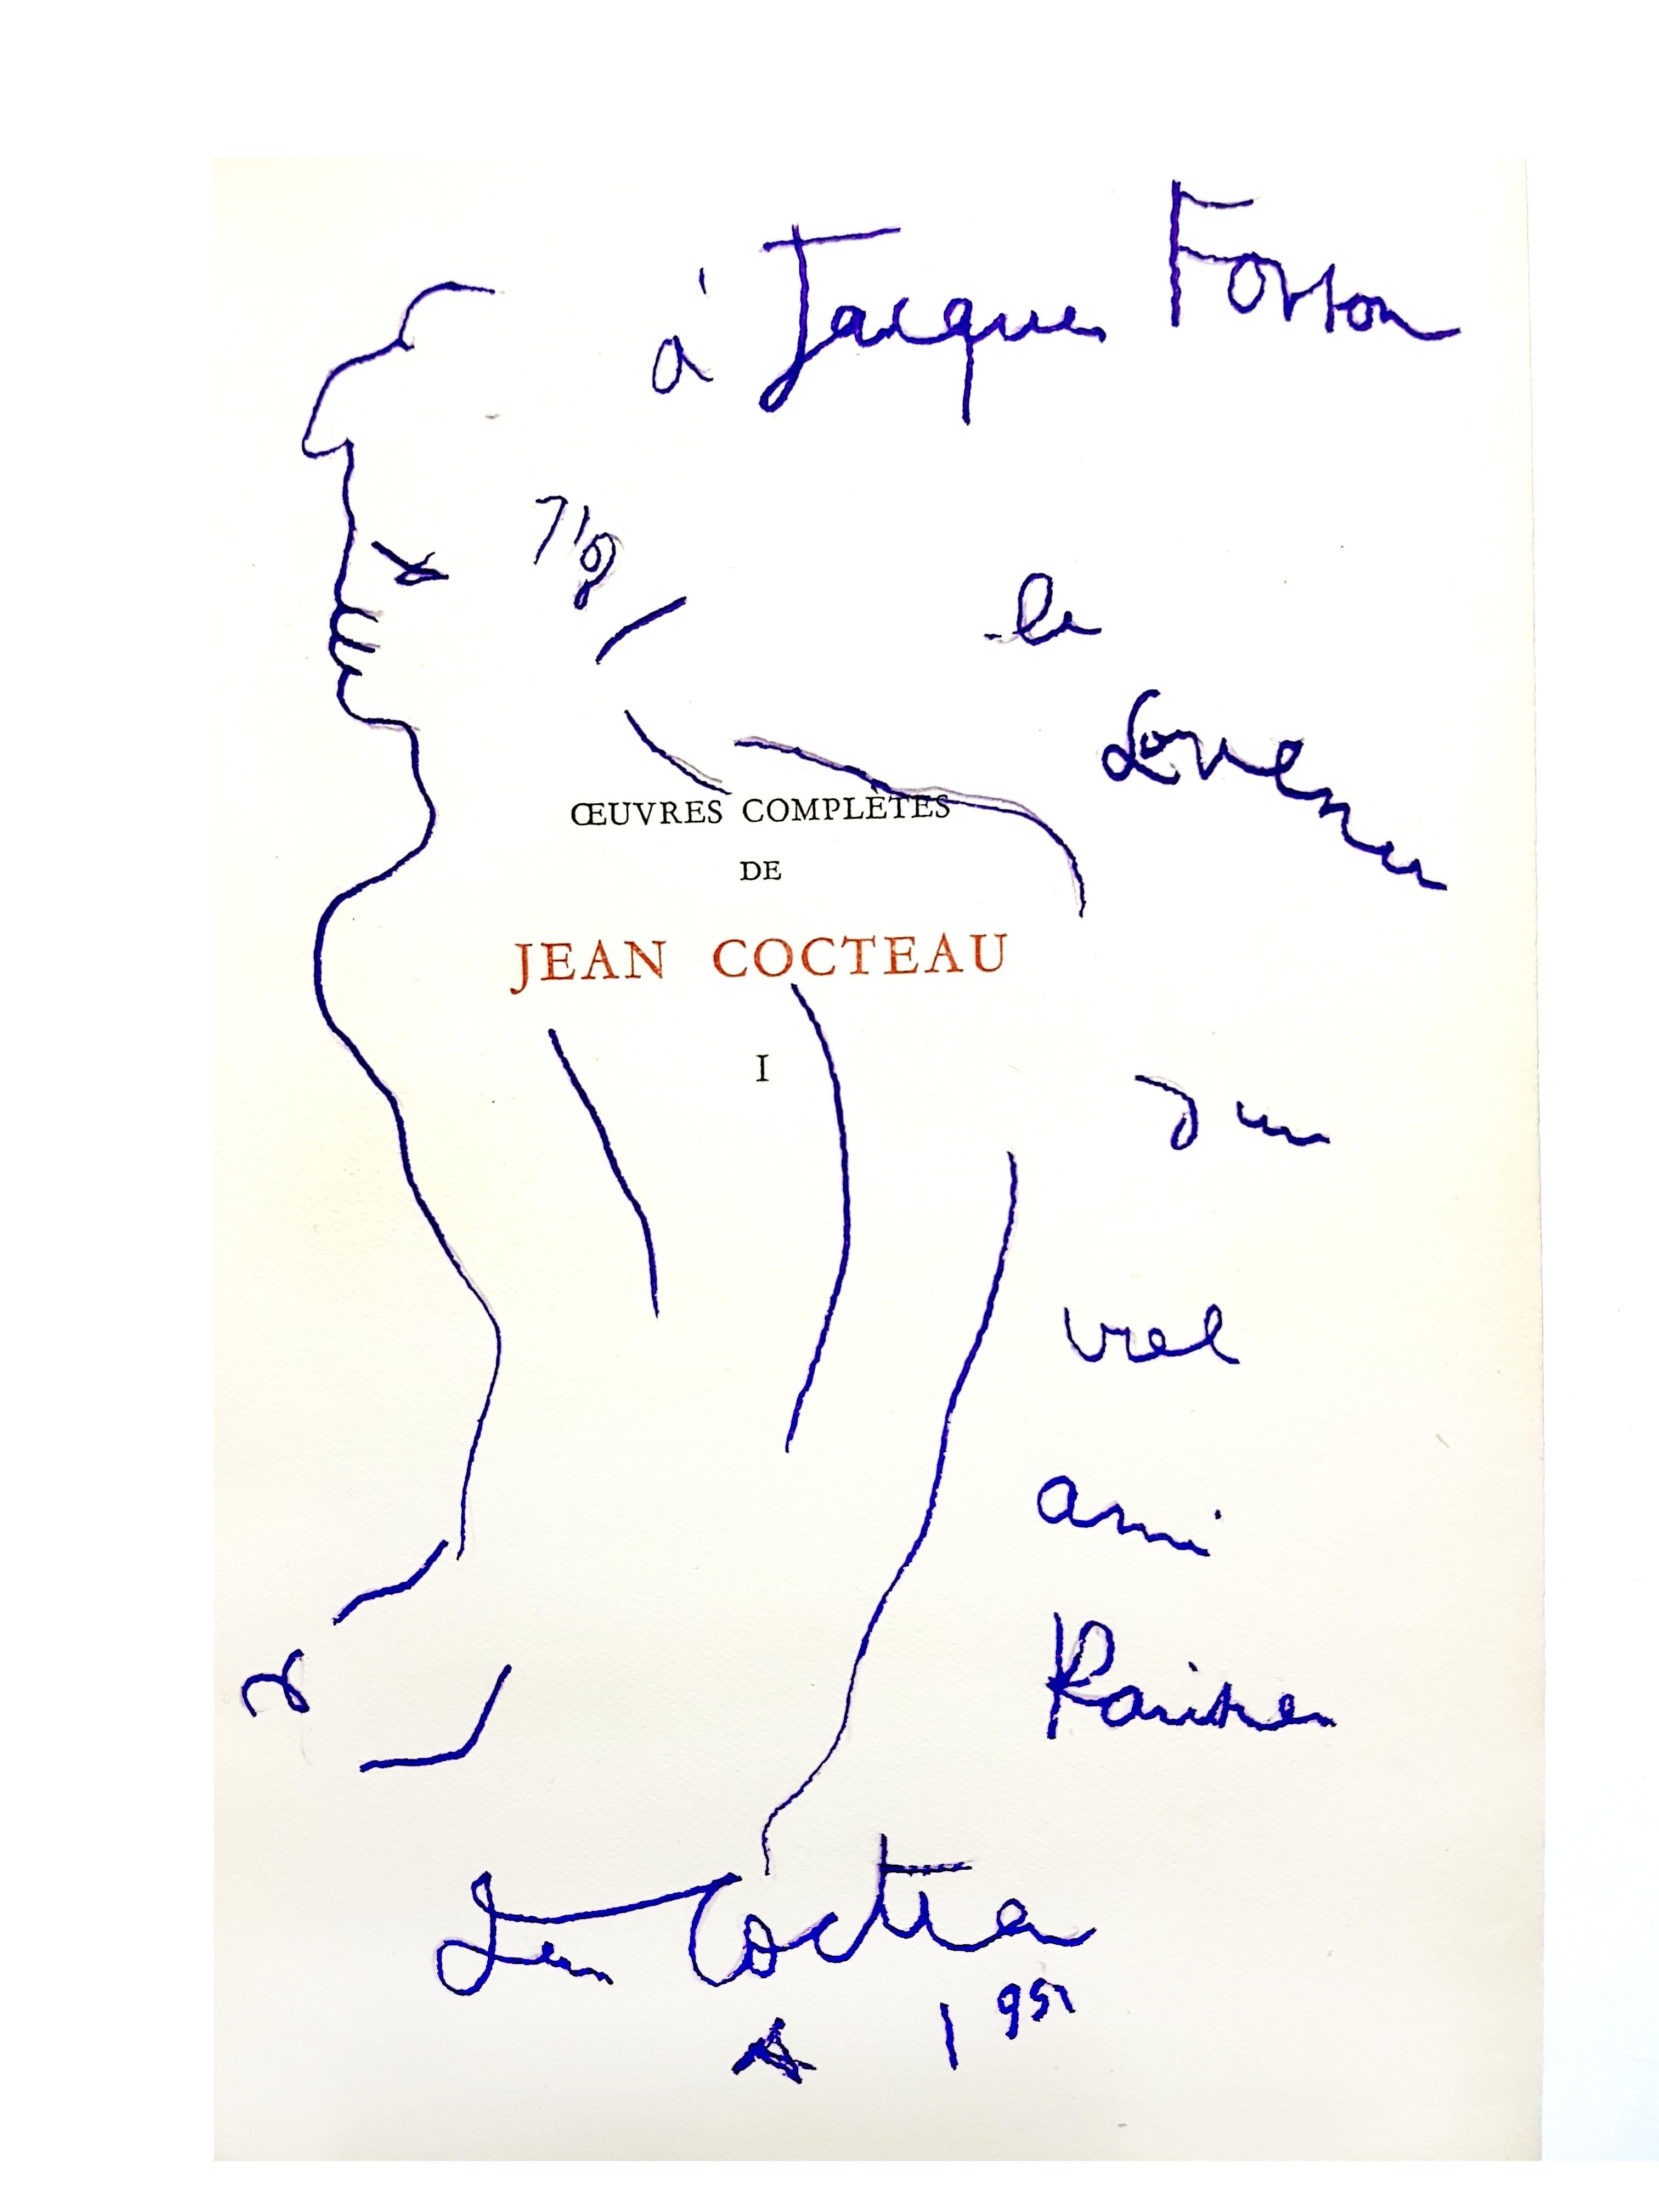 Jean Cocteau 
Außergewöhnliches Exemplar des Gesamtwerks in 9 Bänden, Jacques Fonson gewidmet, 8 mit Originalzeichnungen auf den Seiten
Halber Einband aus rotem Marokko mit Goldprägung
8 Bände, signiert von Cocteau und mit einer Originalzeichnung